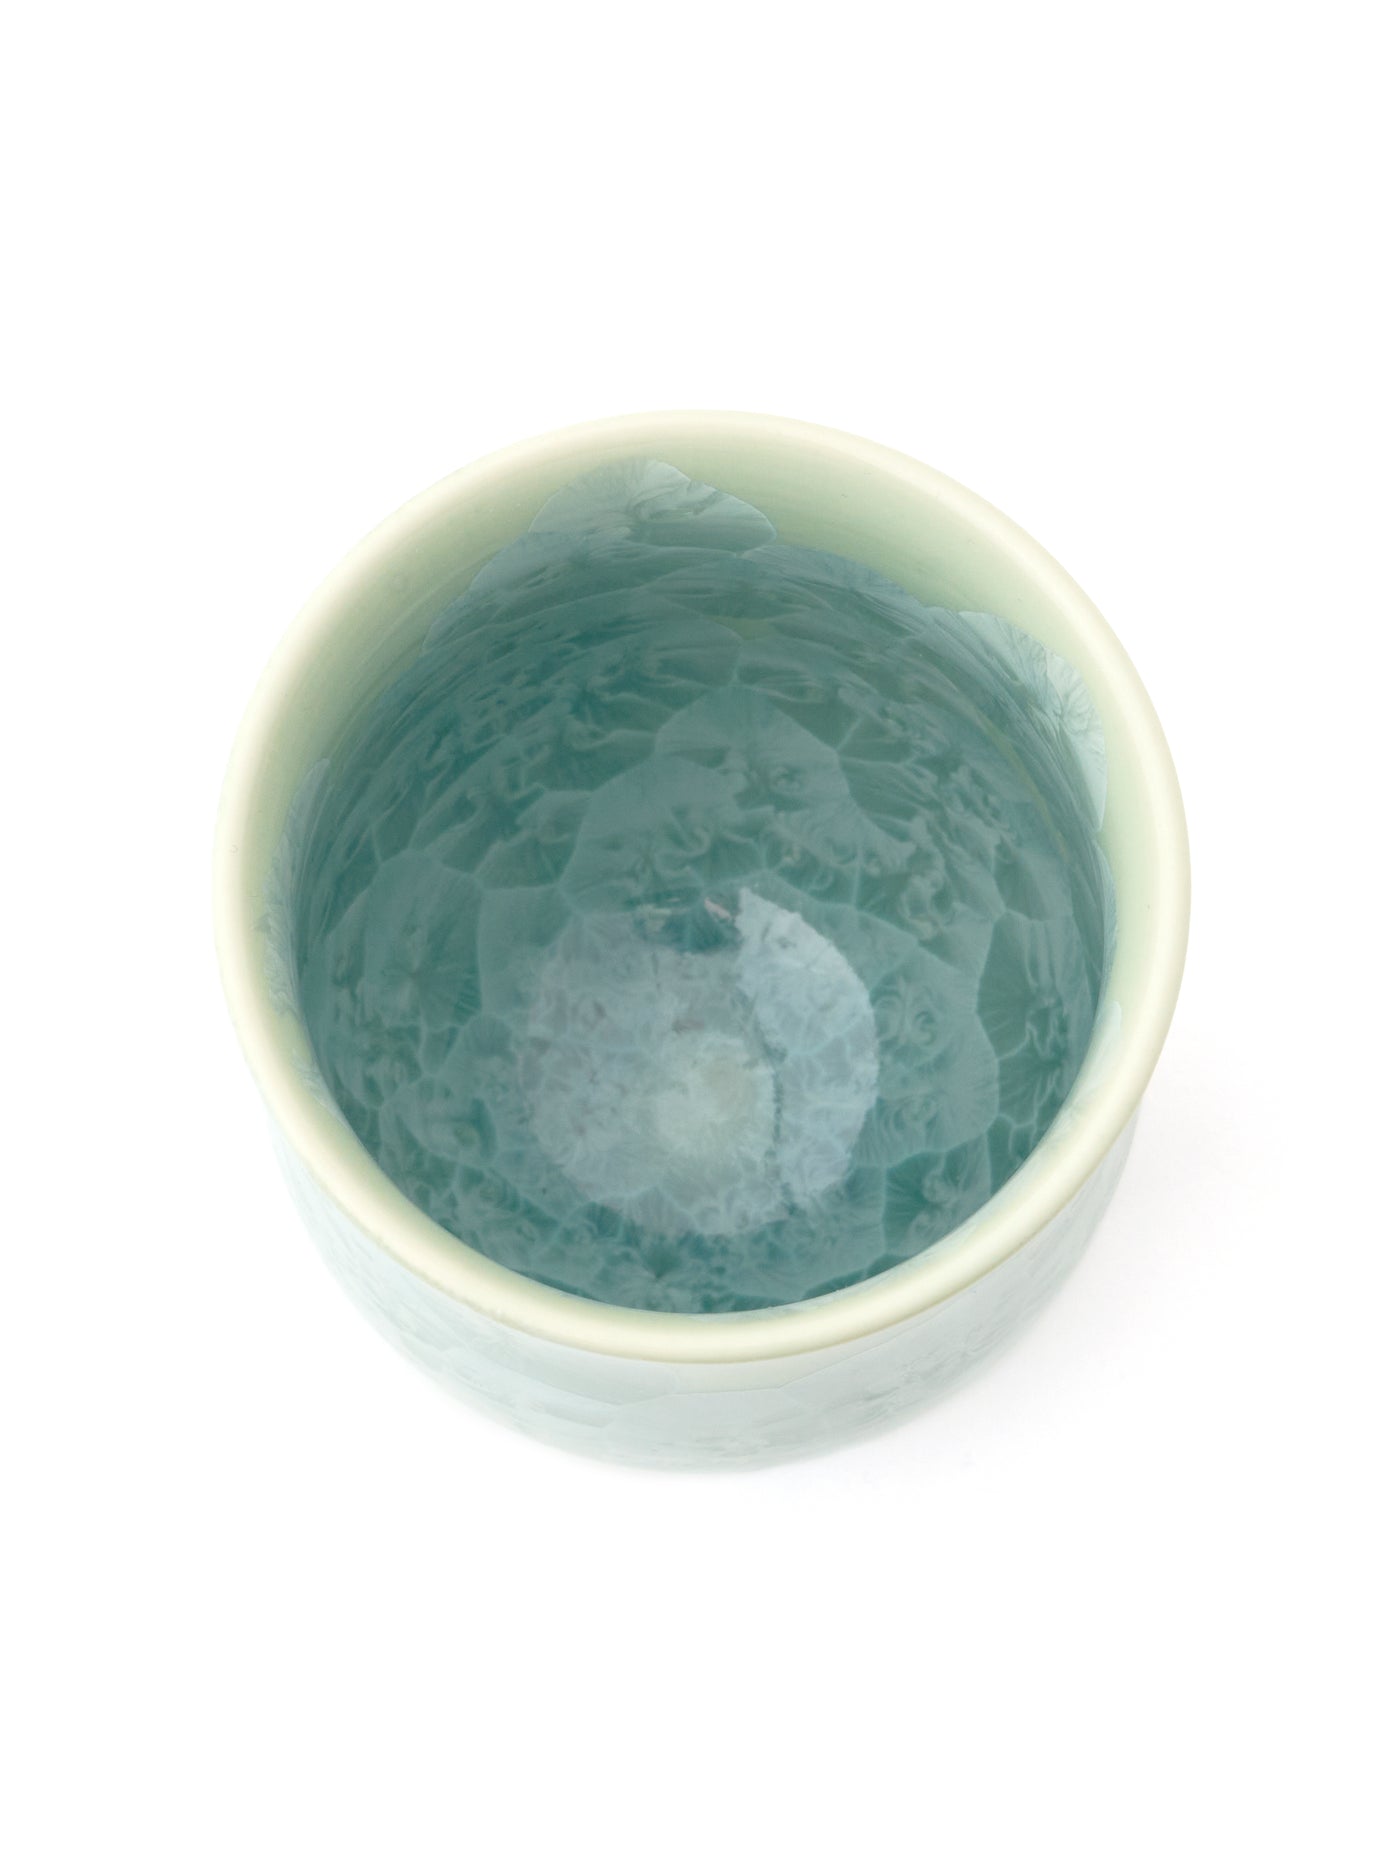 Ensemble de tasses à thé Cristal Vert Yunomi Kyoto de Kitaya (7fl.oz/200ml)